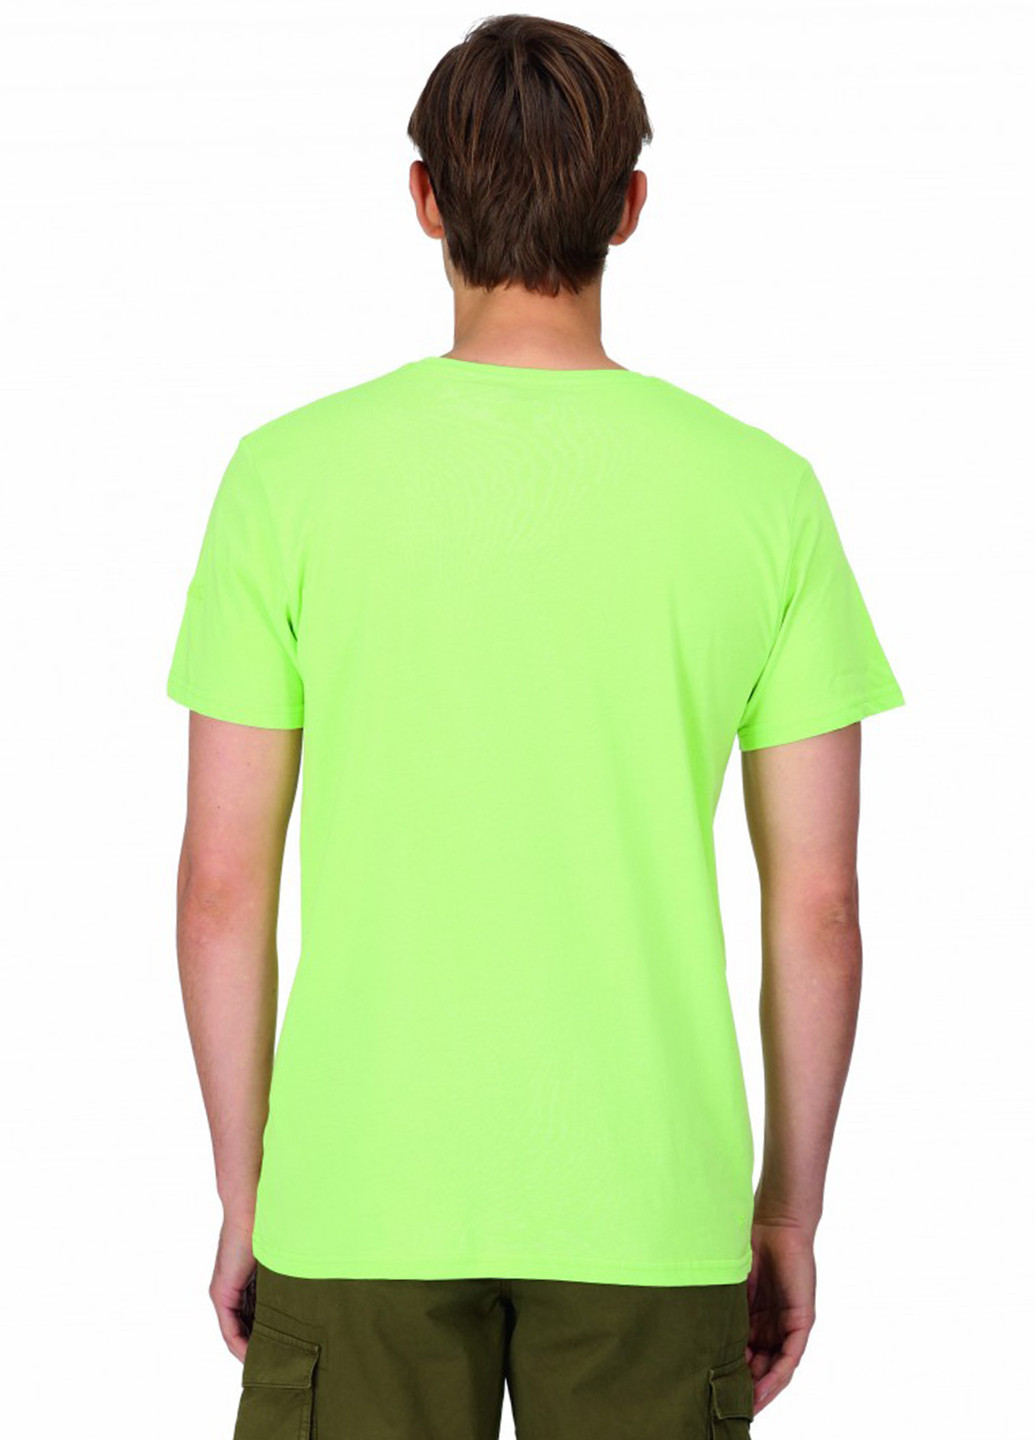 Салатовая футболка Regatta